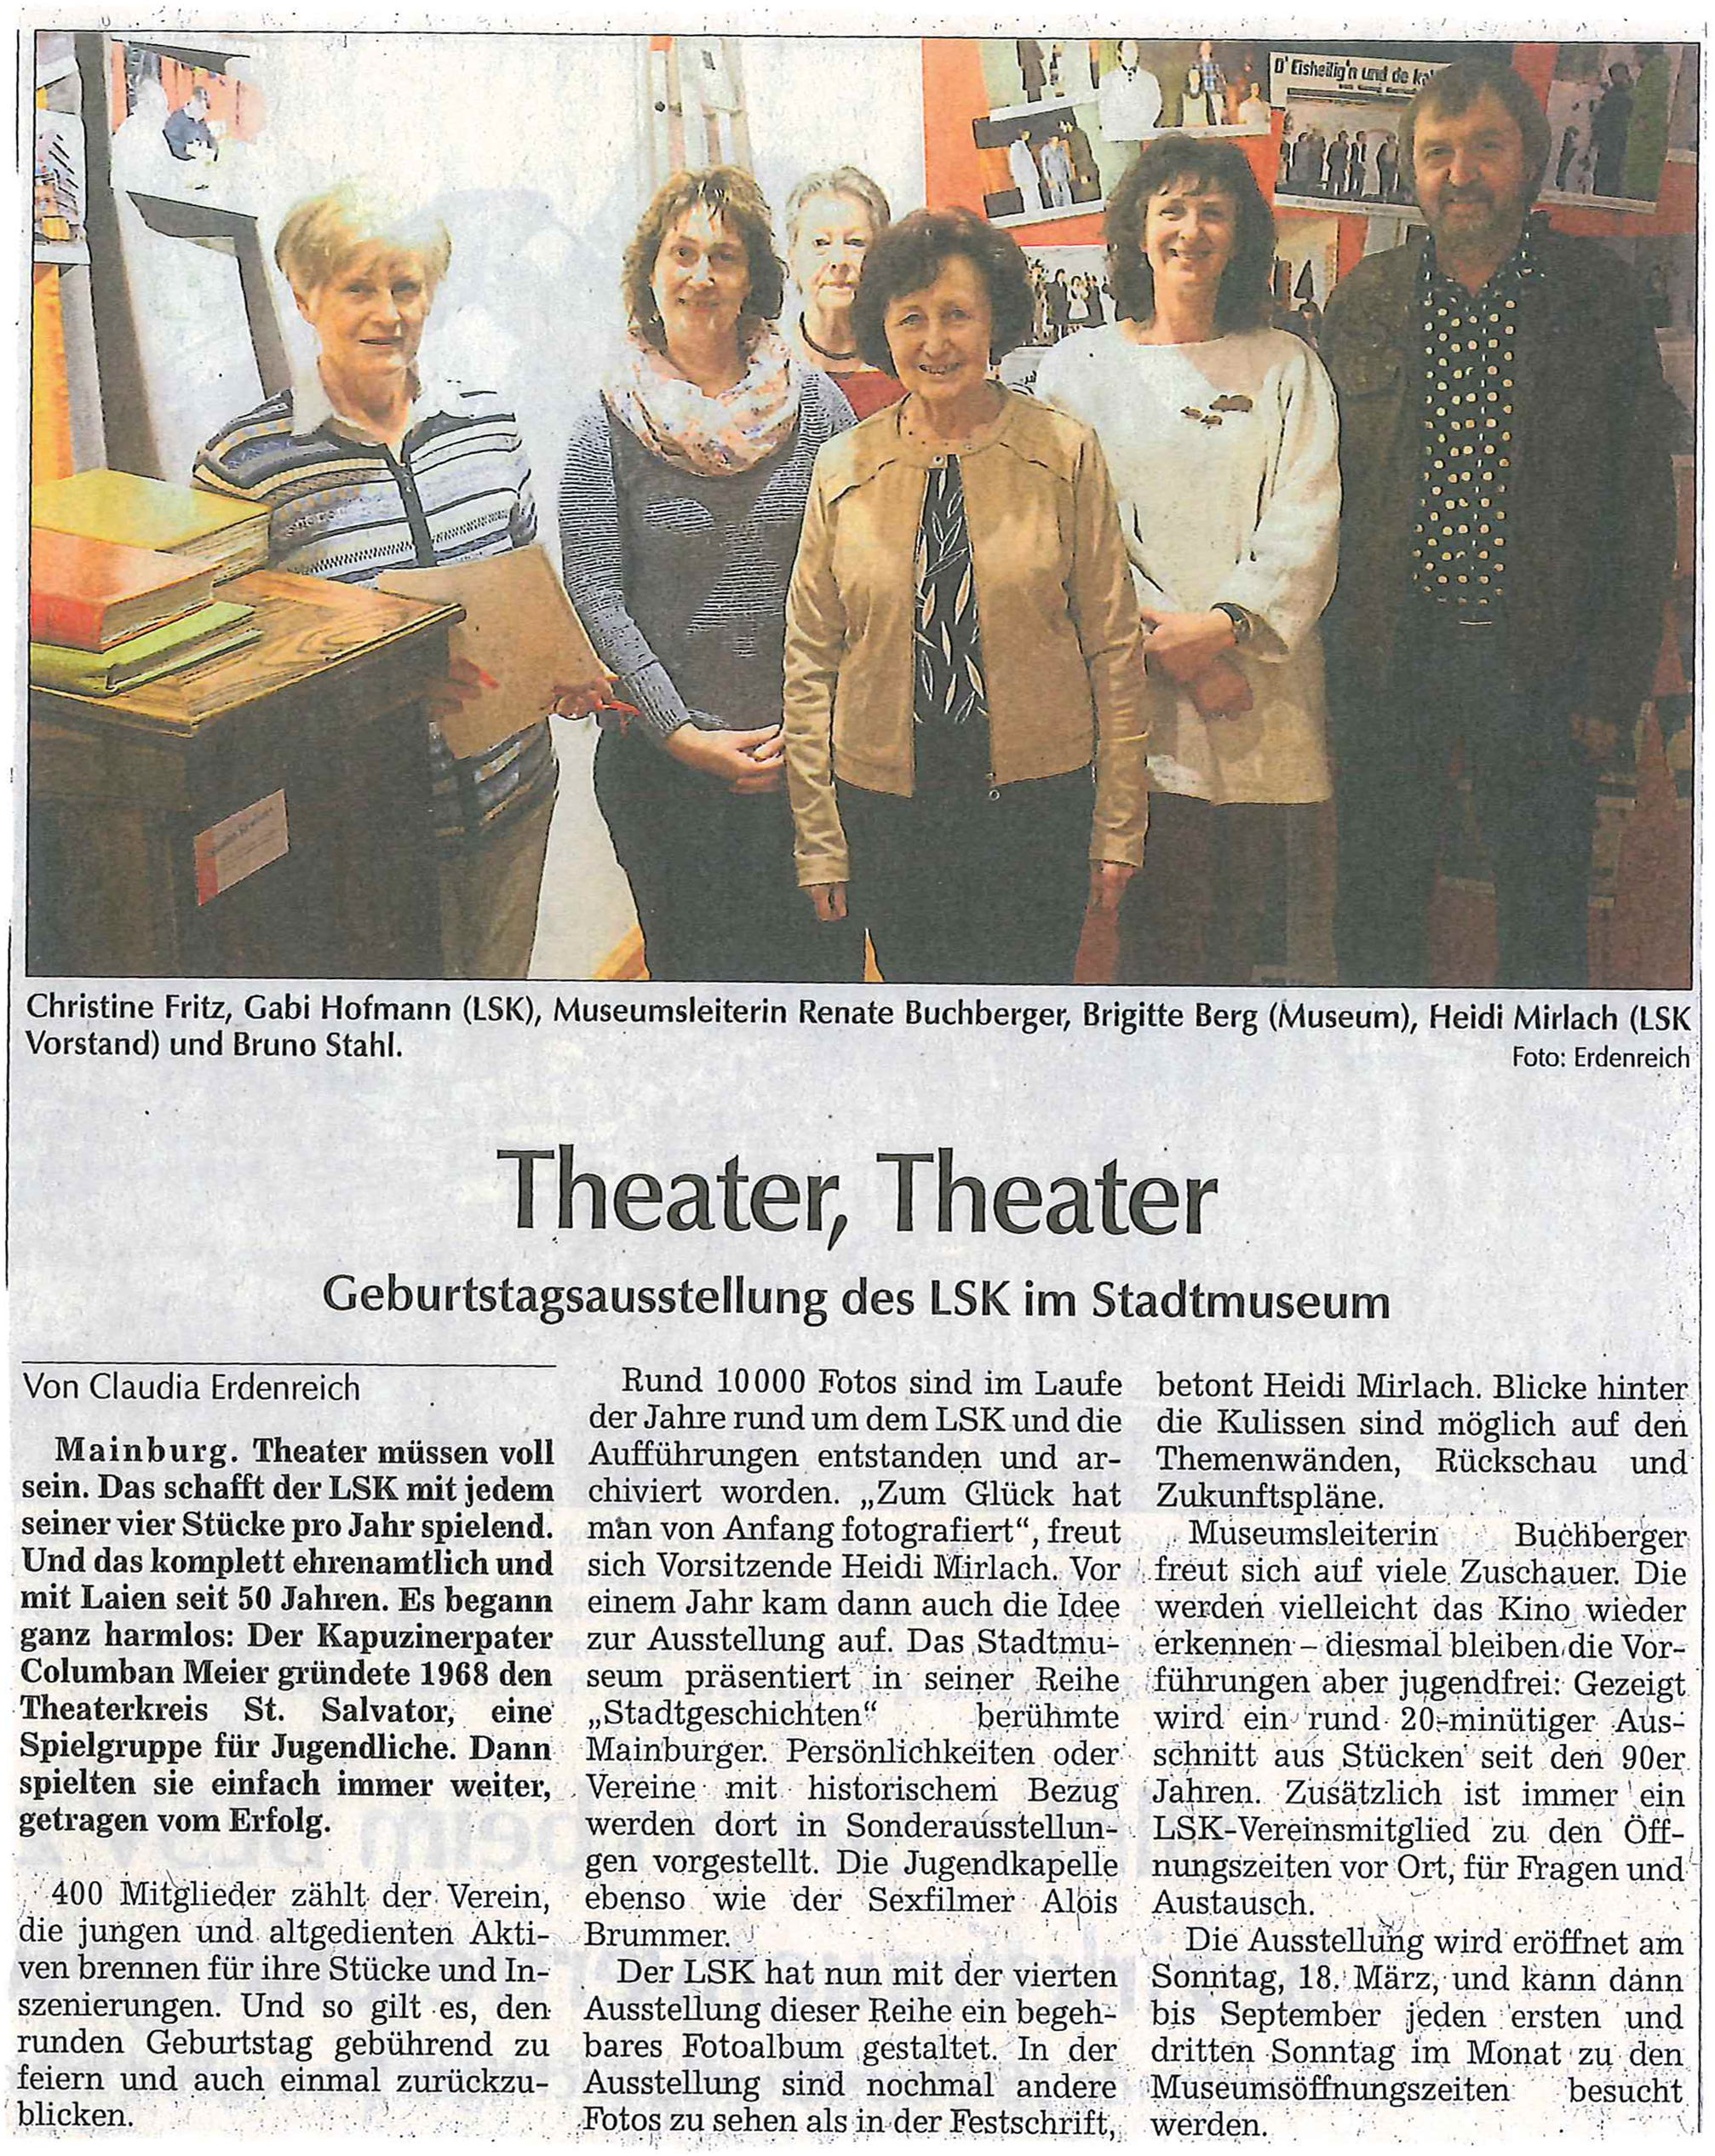 Hallertauer Zeitung 12.03.2018 Theater, Theater